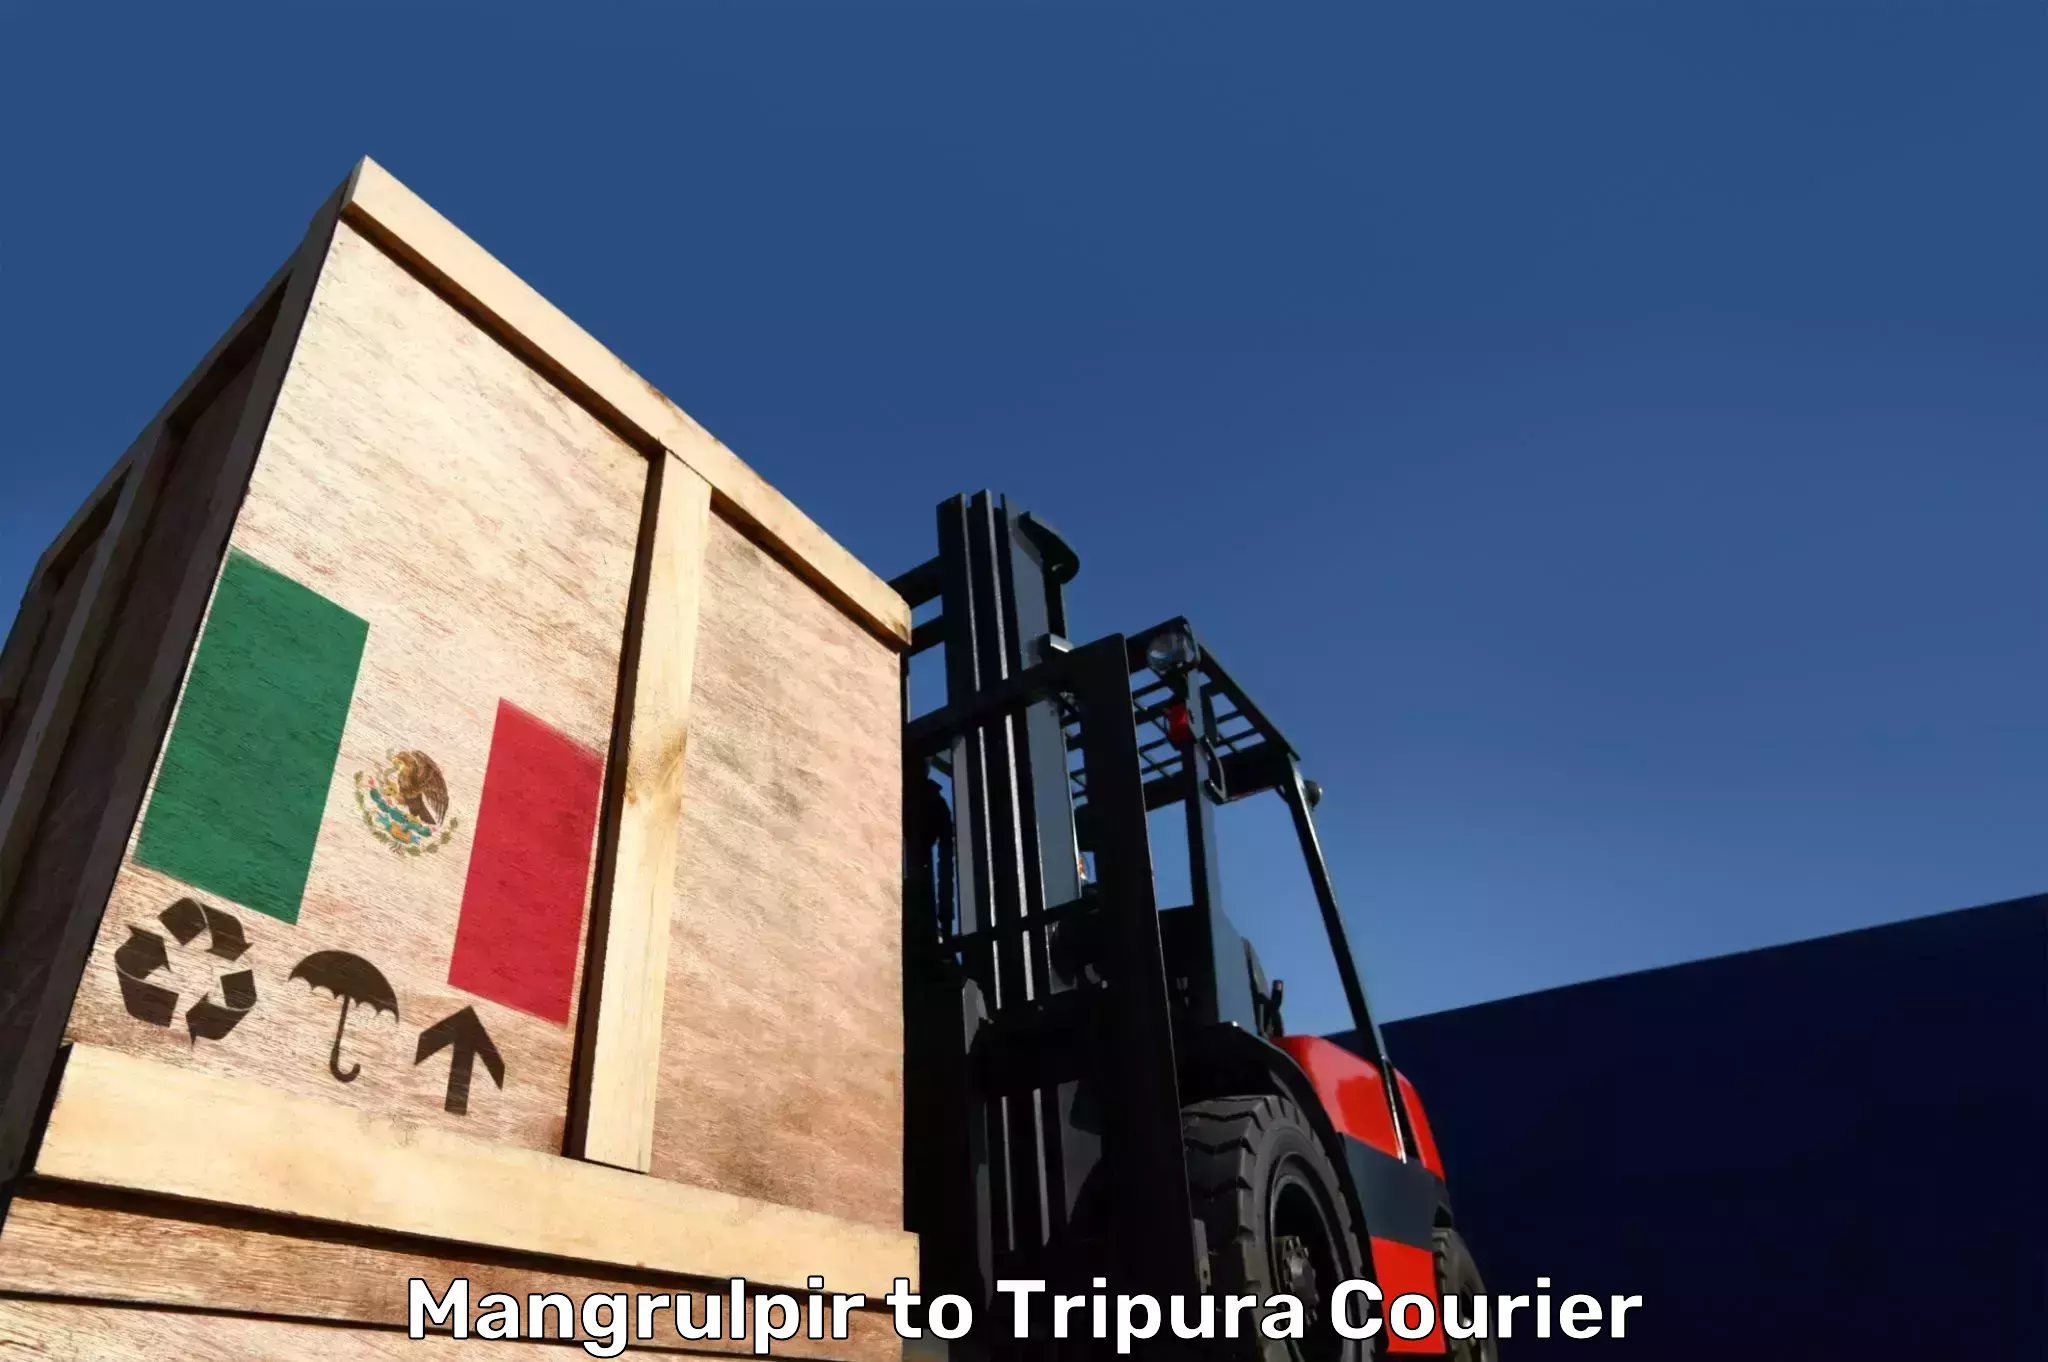 Baggage shipping service Mangrulpir to Tripura